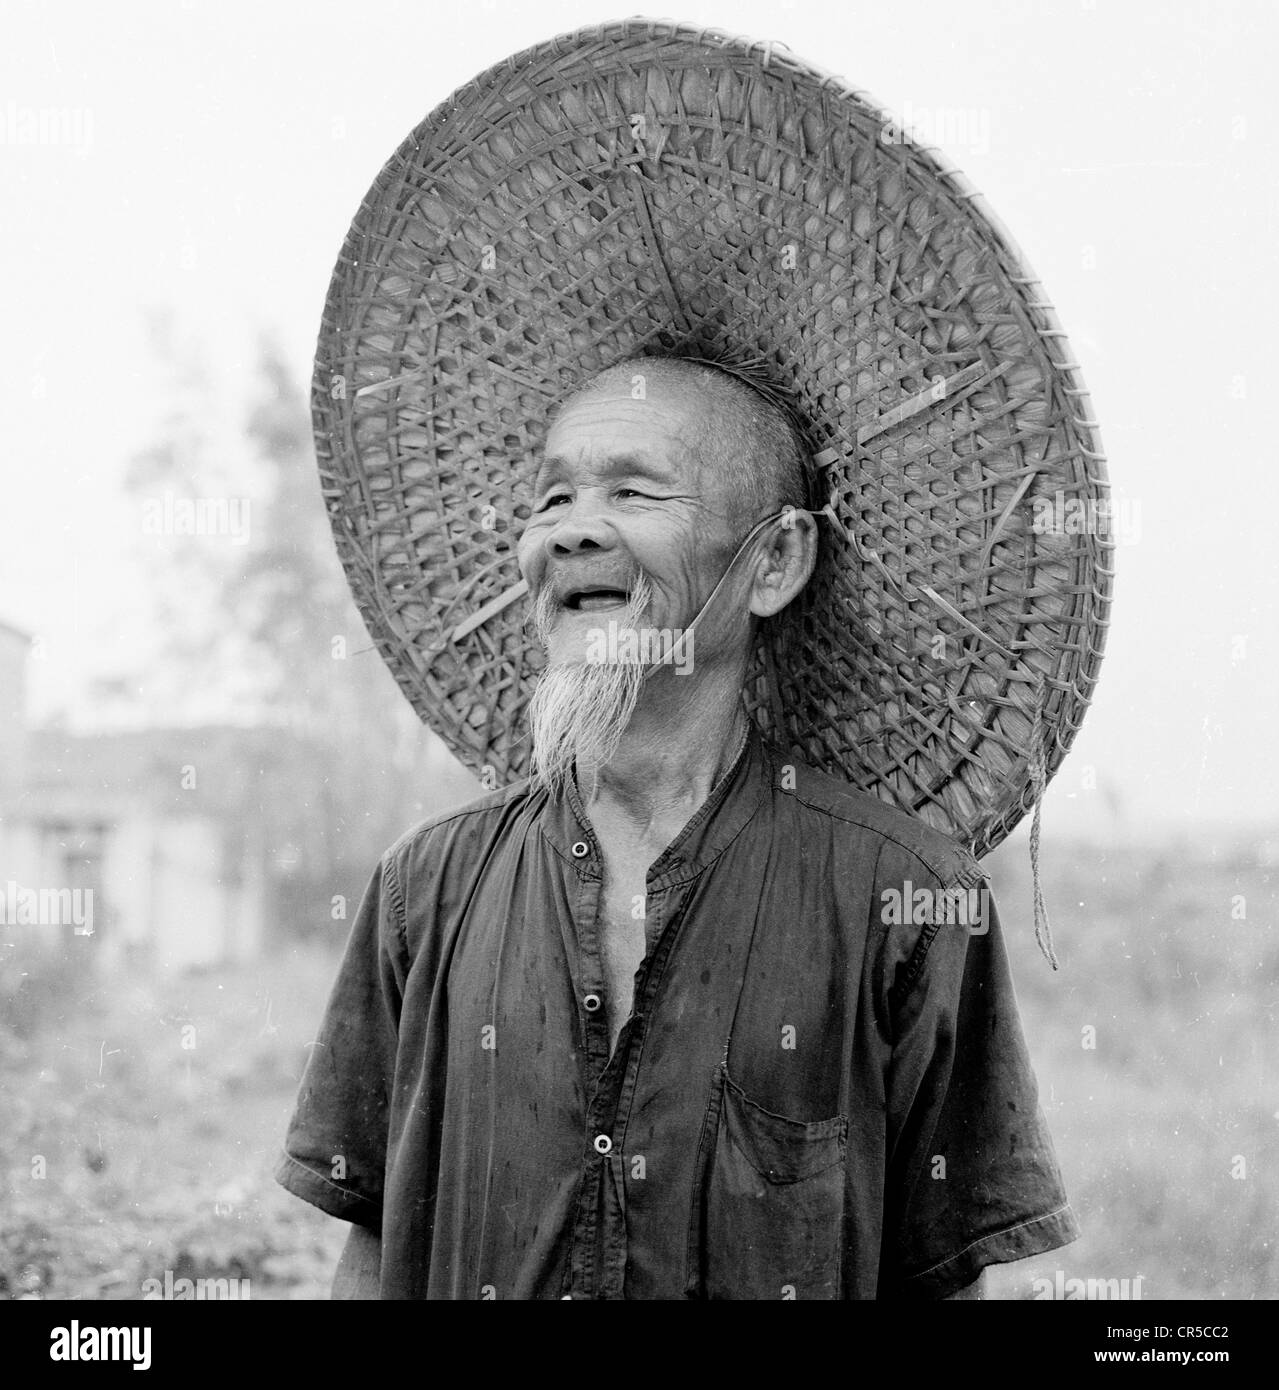 Hong Kong, 1950. Un homme âgé travailleur chinois en costume traditionnel, portant une large wicker rond ou conique coolie hat. Banque D'Images